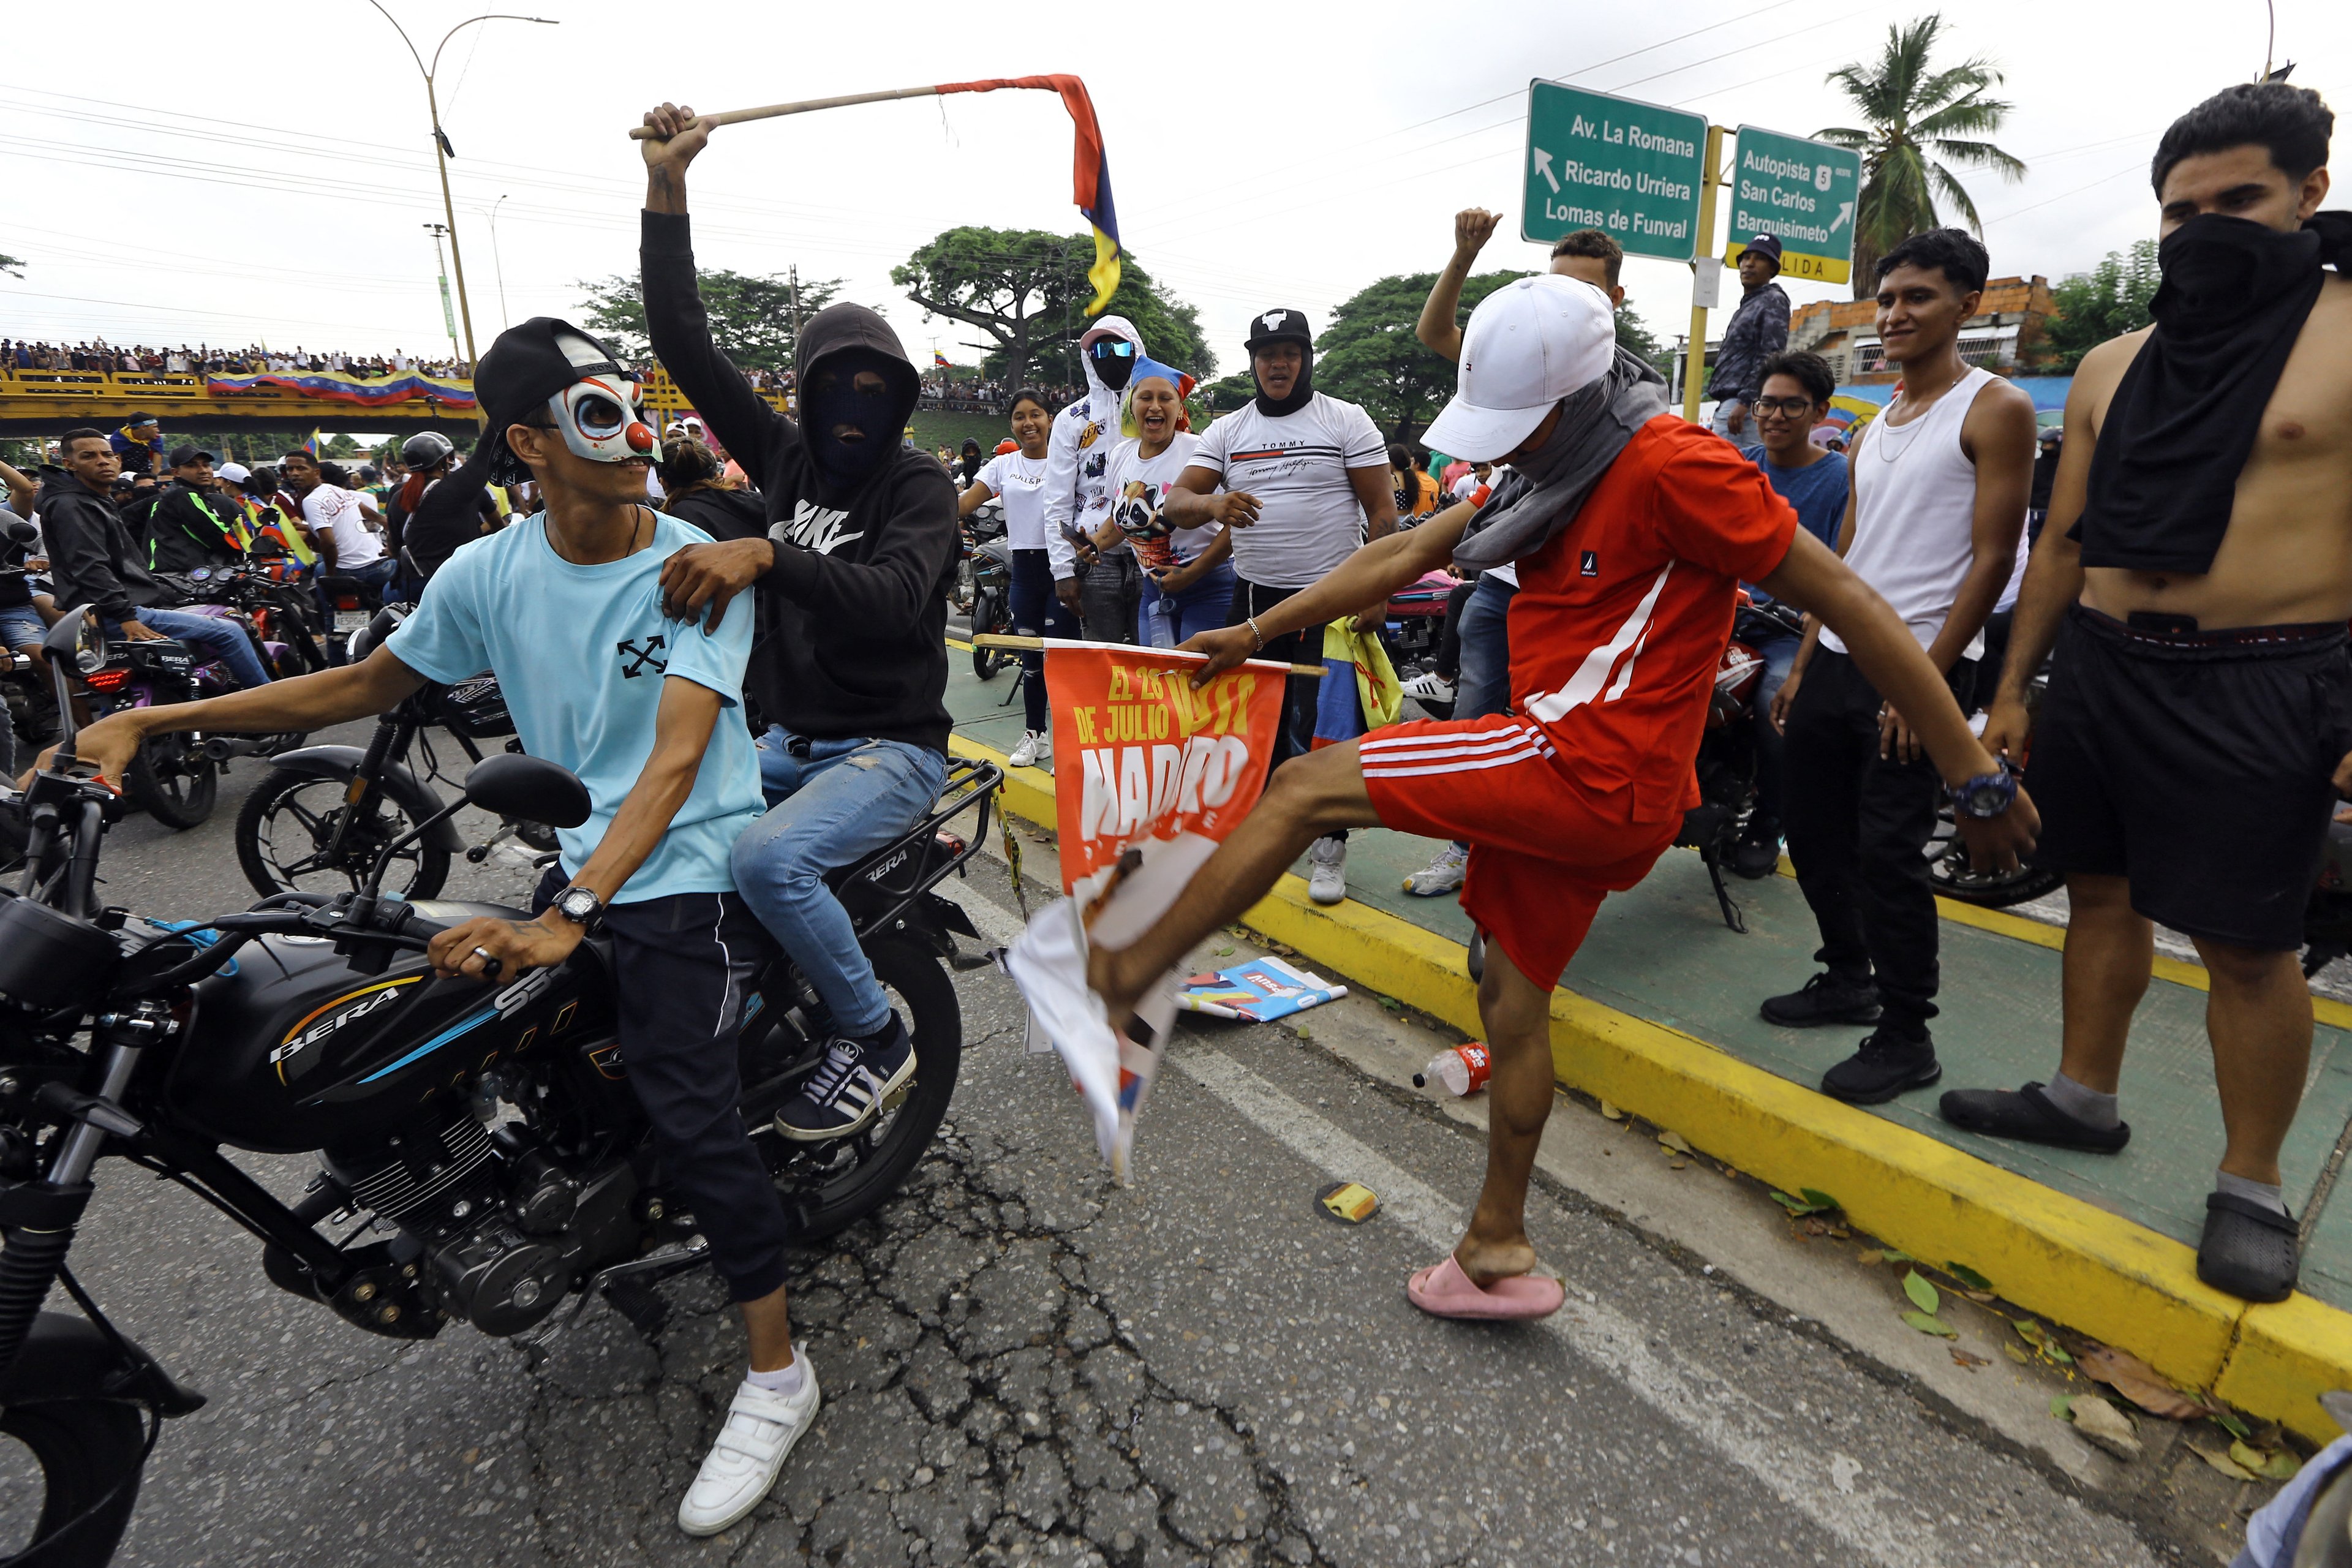 Um manifestante chuta uma faixa de campanha do presidente venezuelano Nicolás Maduro durante um protesto em Valência, no estado de Carabobo.